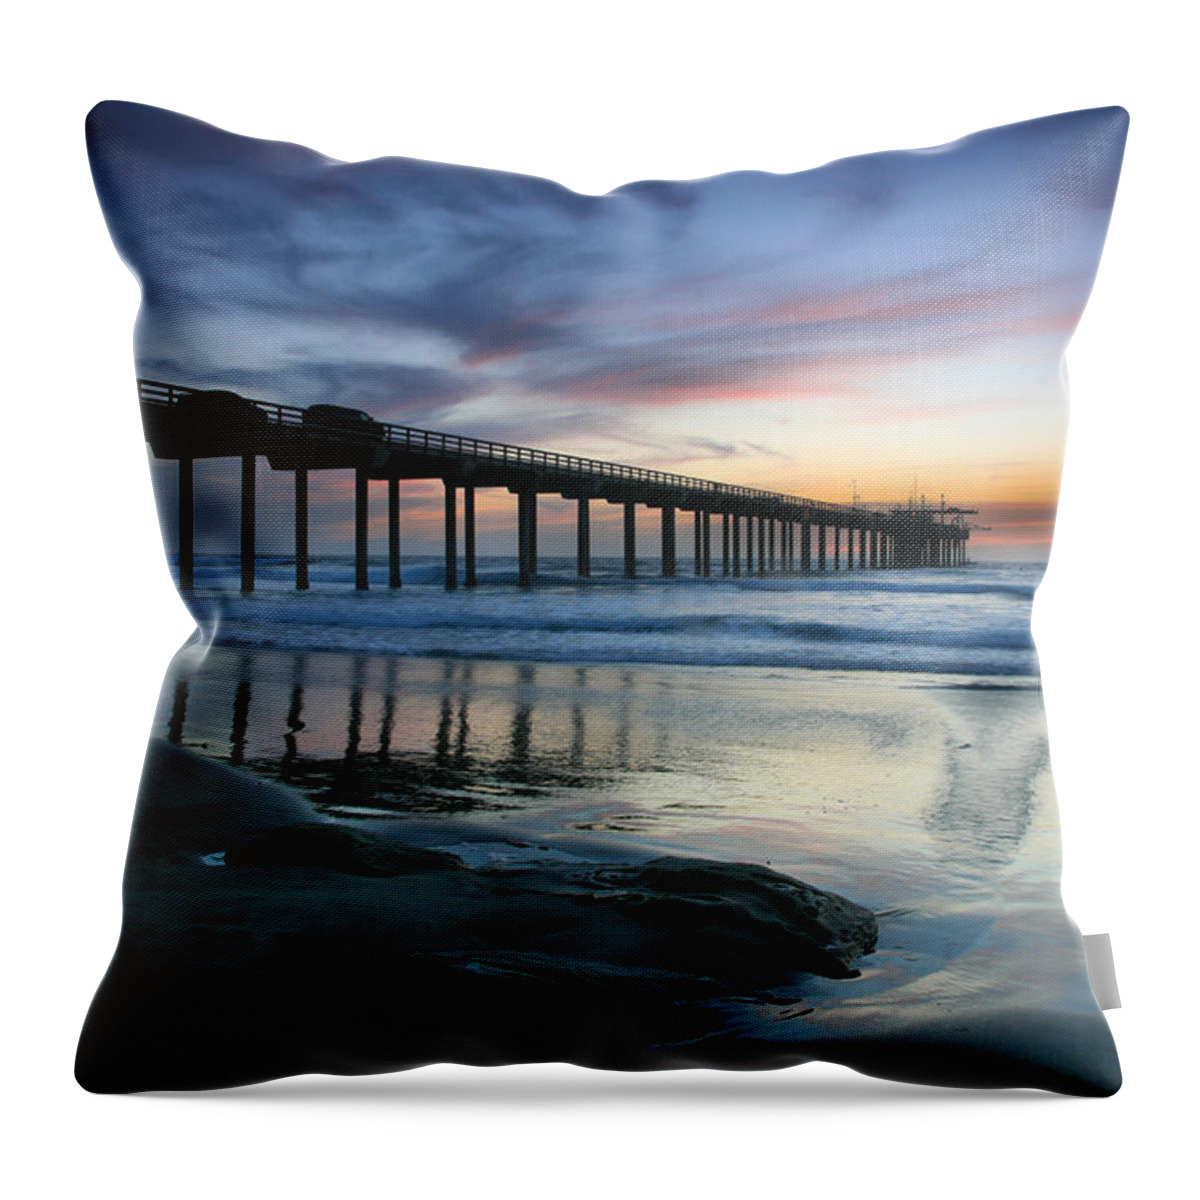 Landscape Throw Pillow featuring the photograph Scripps Pier Evening by Scott Cunningham